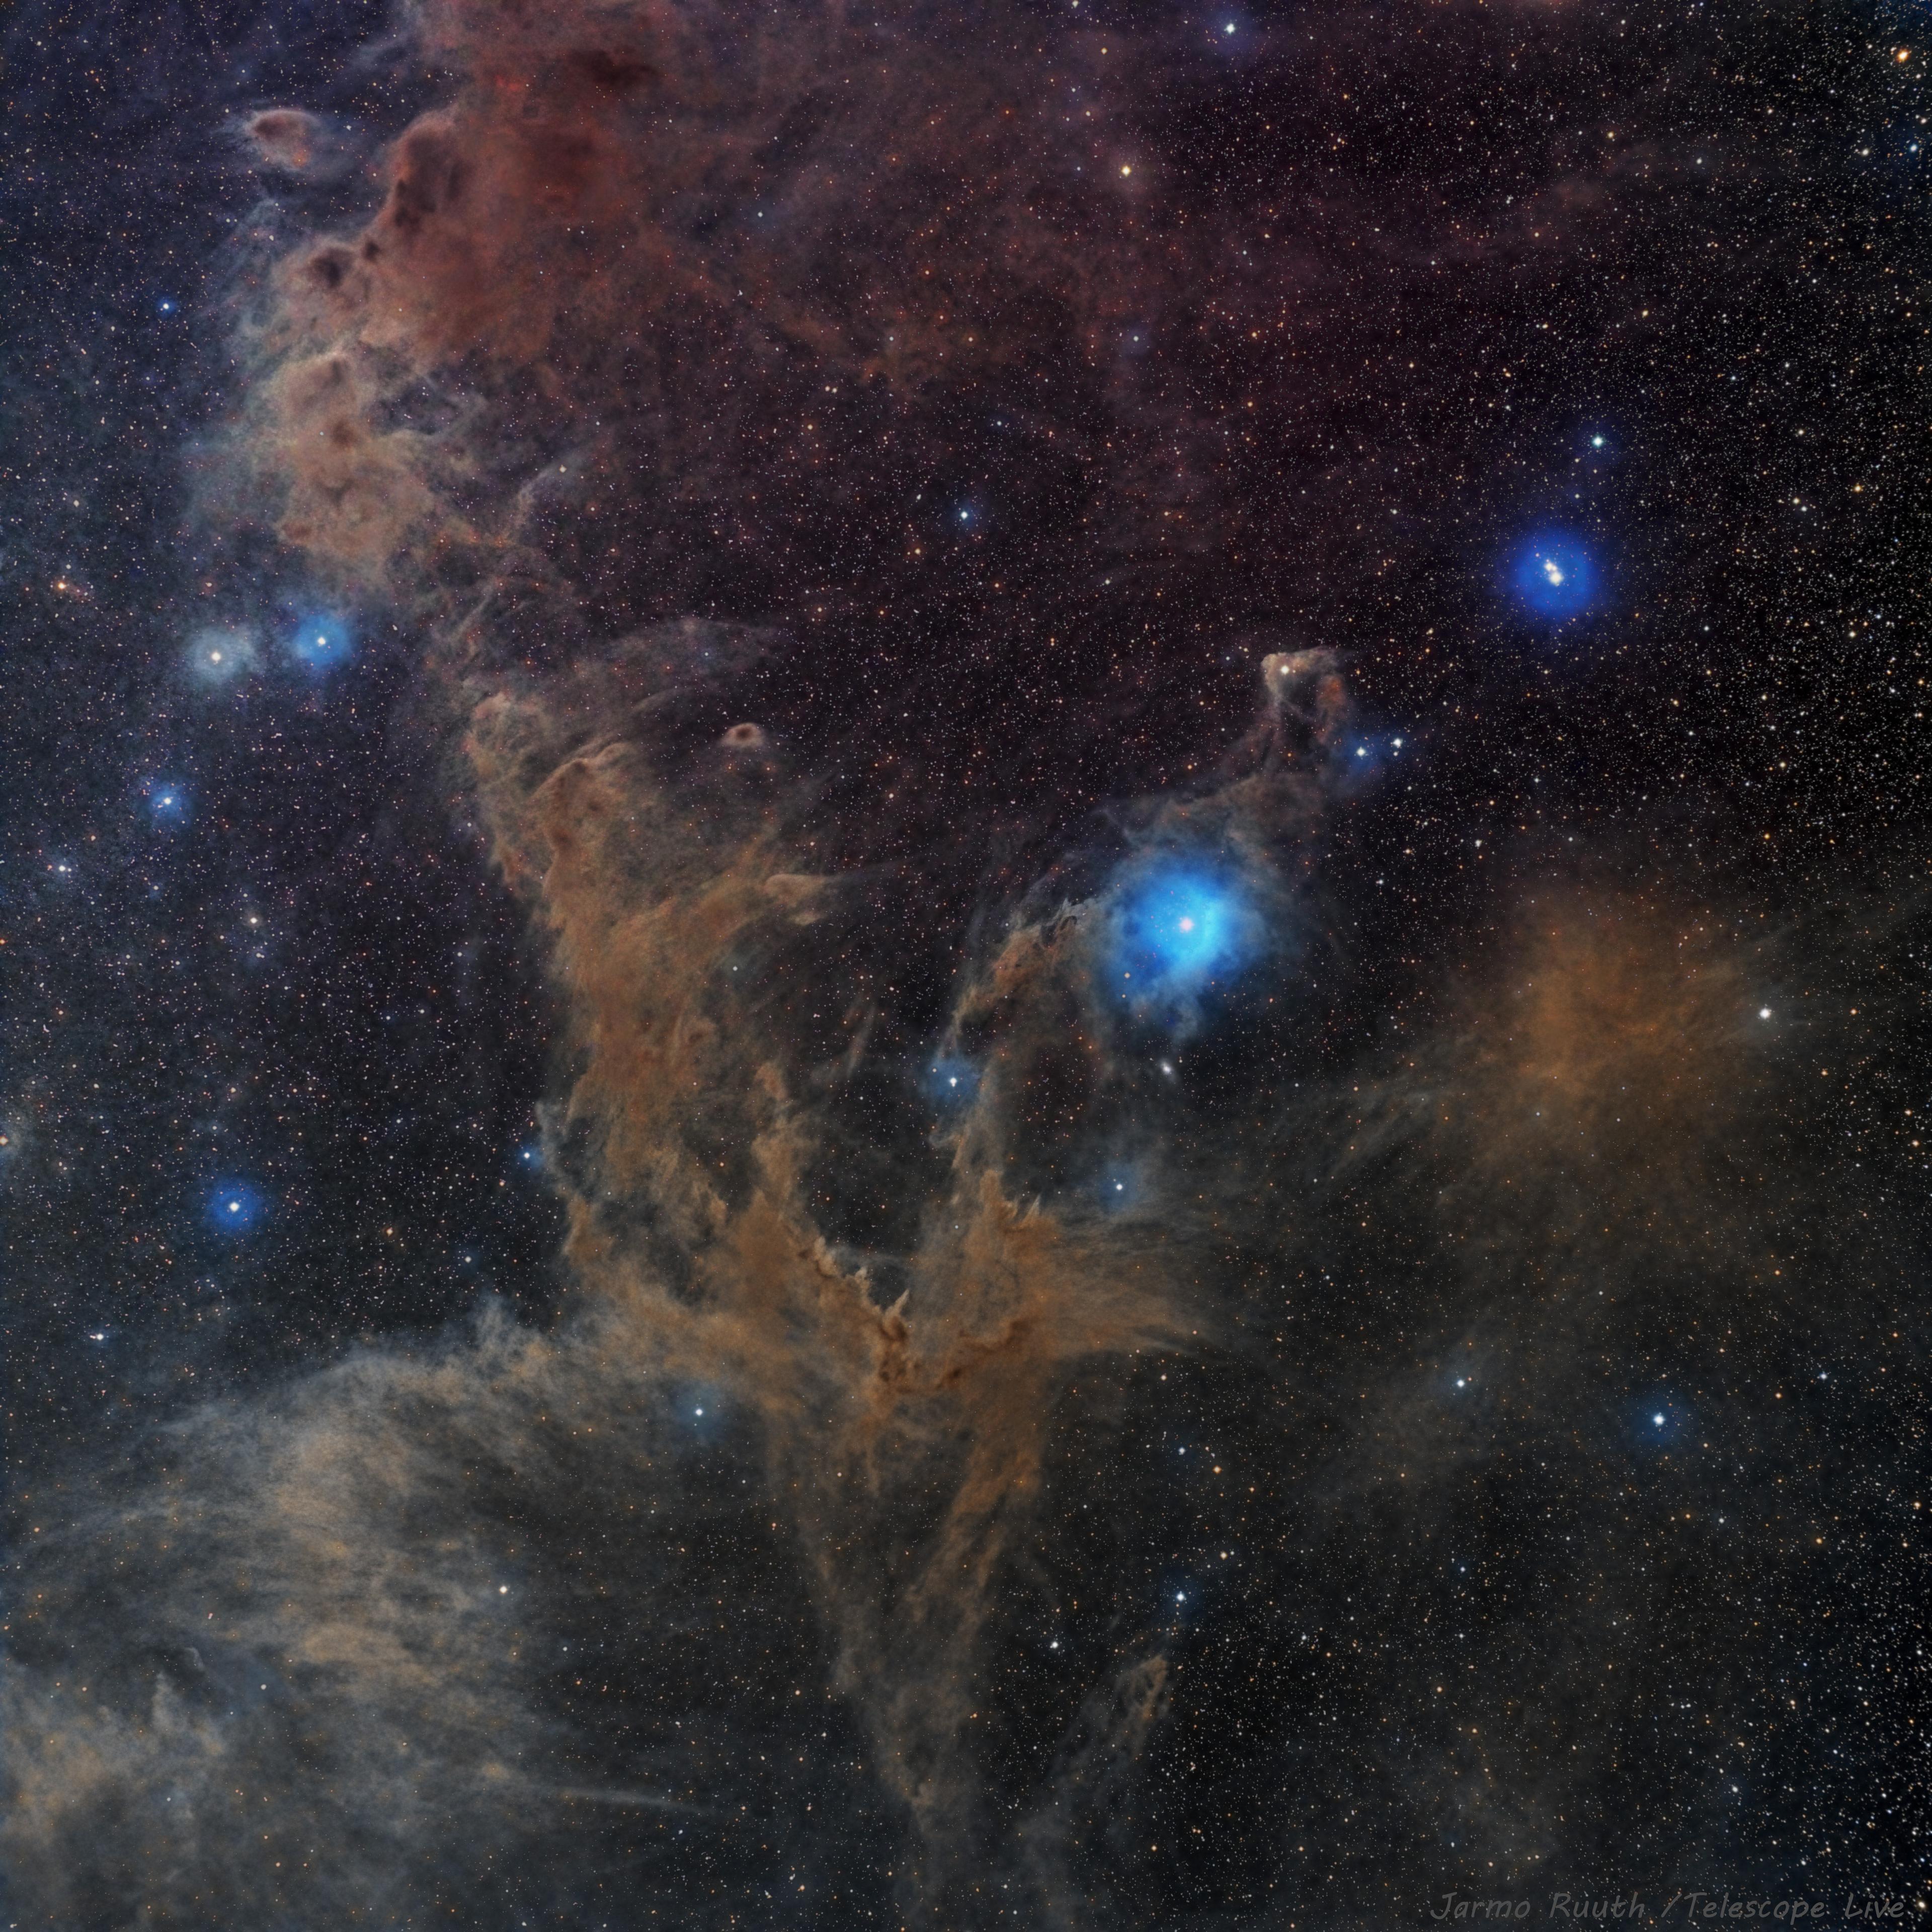 صورة بتعريض طويل تظهر يظهر فيها الغبار البينجمي مشكّلاً عدداً من السدم إضافة إلى العديد من النجوم متفاوتة الحجم